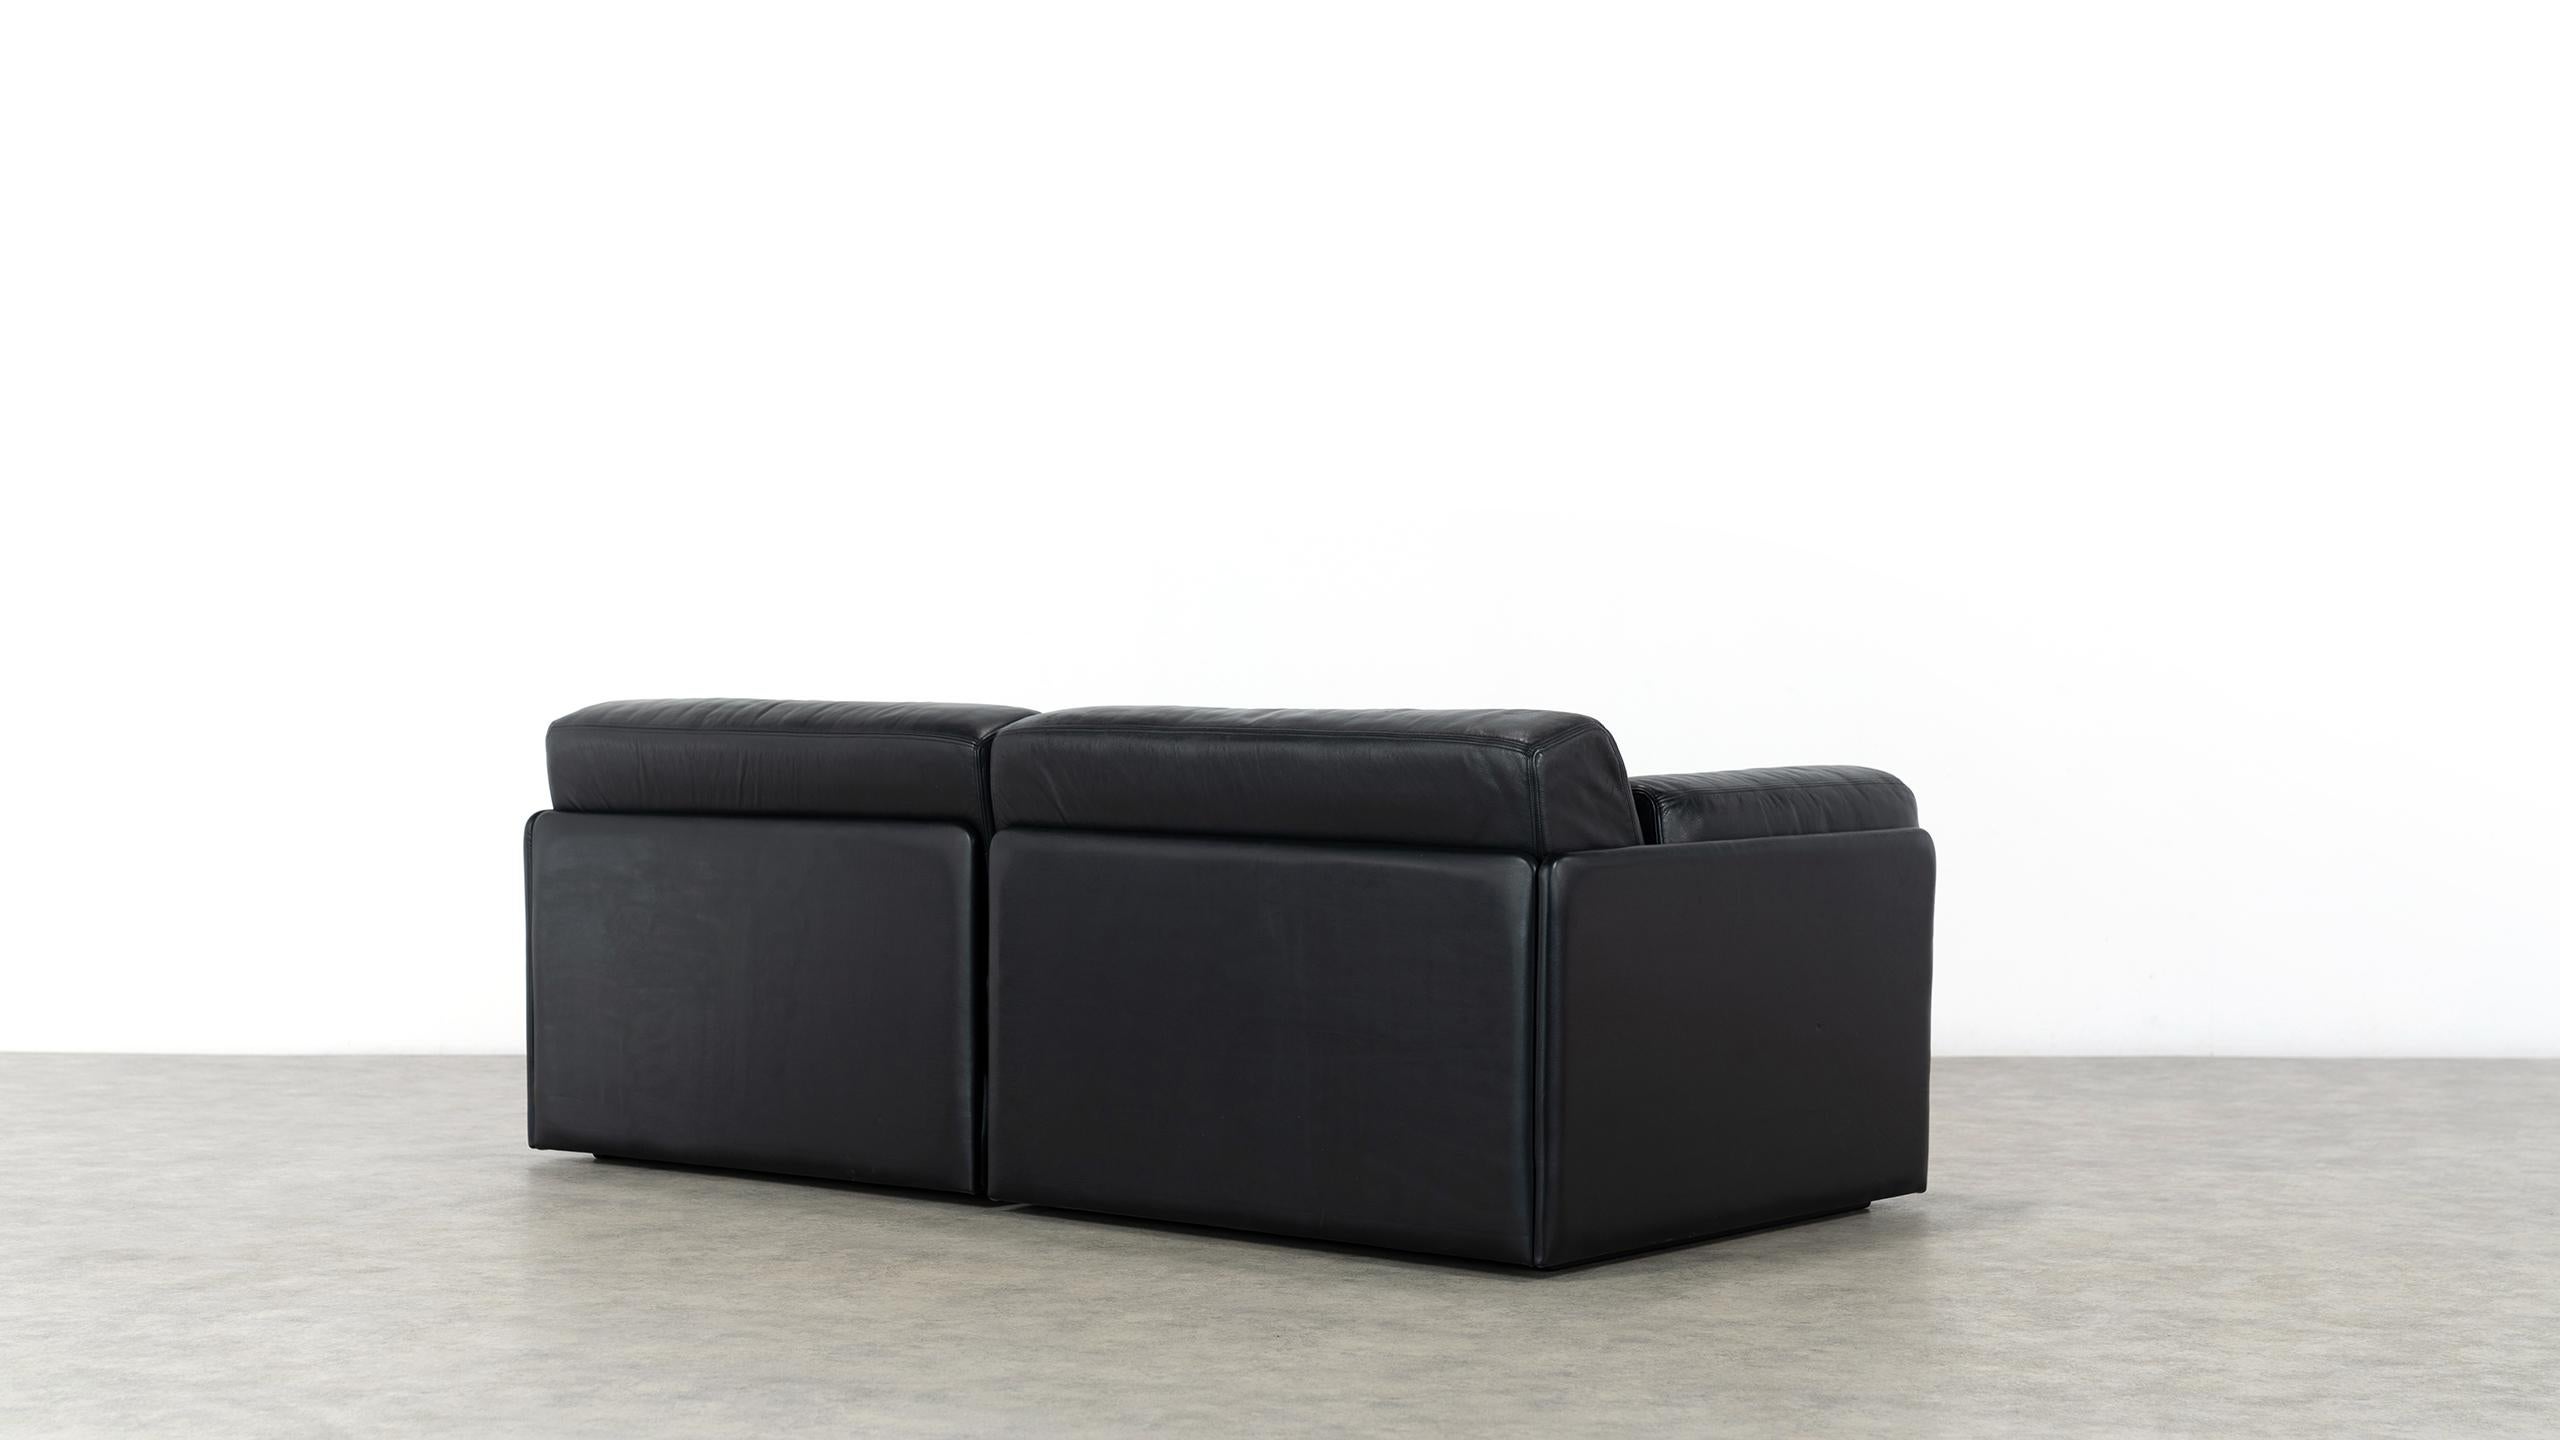 De Sede Ds76, Sofa & Daybed in Black Leather, 1972 by De Sede Design Team 5